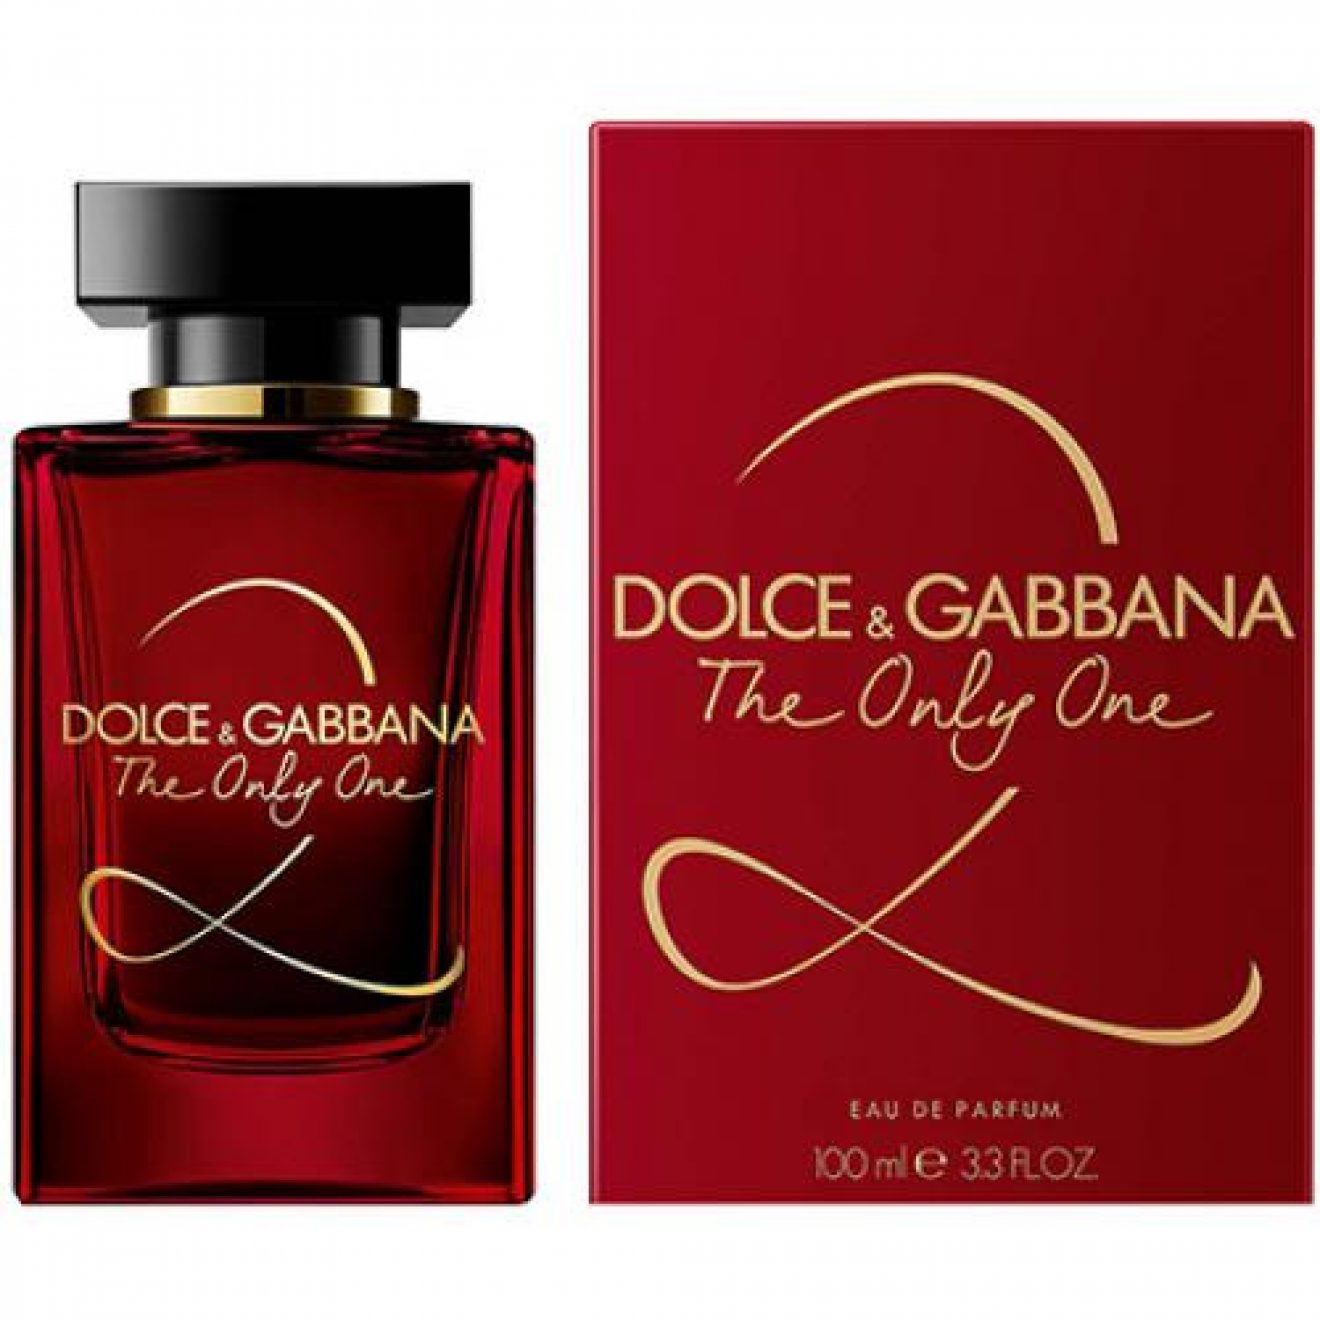 Дольче габбана парфюм летуаль. Dolce Gabbana the only one 2 100 мл. Dolce & Gabbana the only one, EDP., 100 ml. Аромат Dolce Gabbana the only one 2 красный. Dolce& Gabbana the only one 2 EDP, 100 ml.